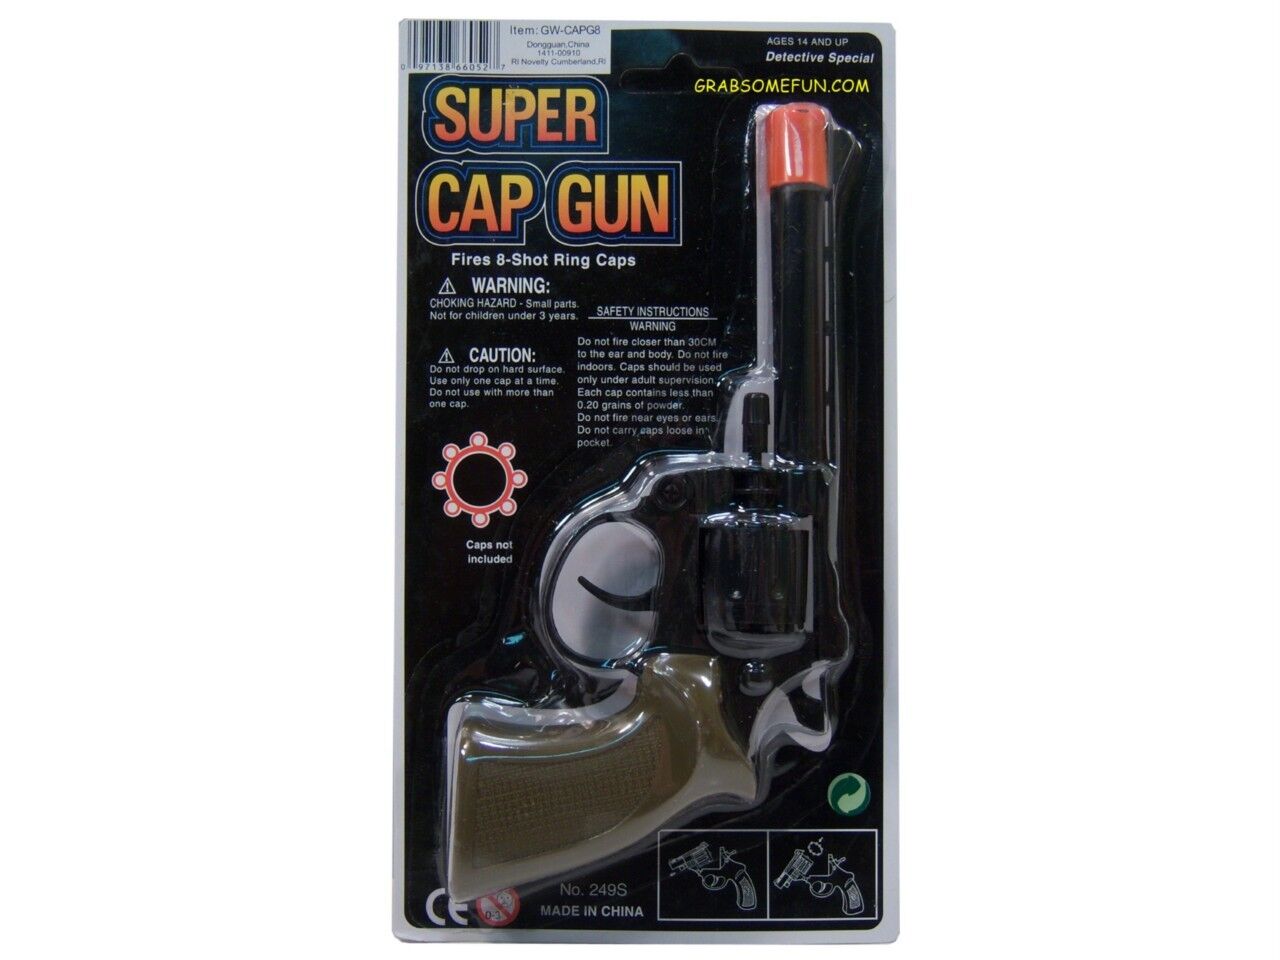 SUPER CAP GUN Toy Pistol Revolver Detective Special ~ Fires 8-shot Ring Caps